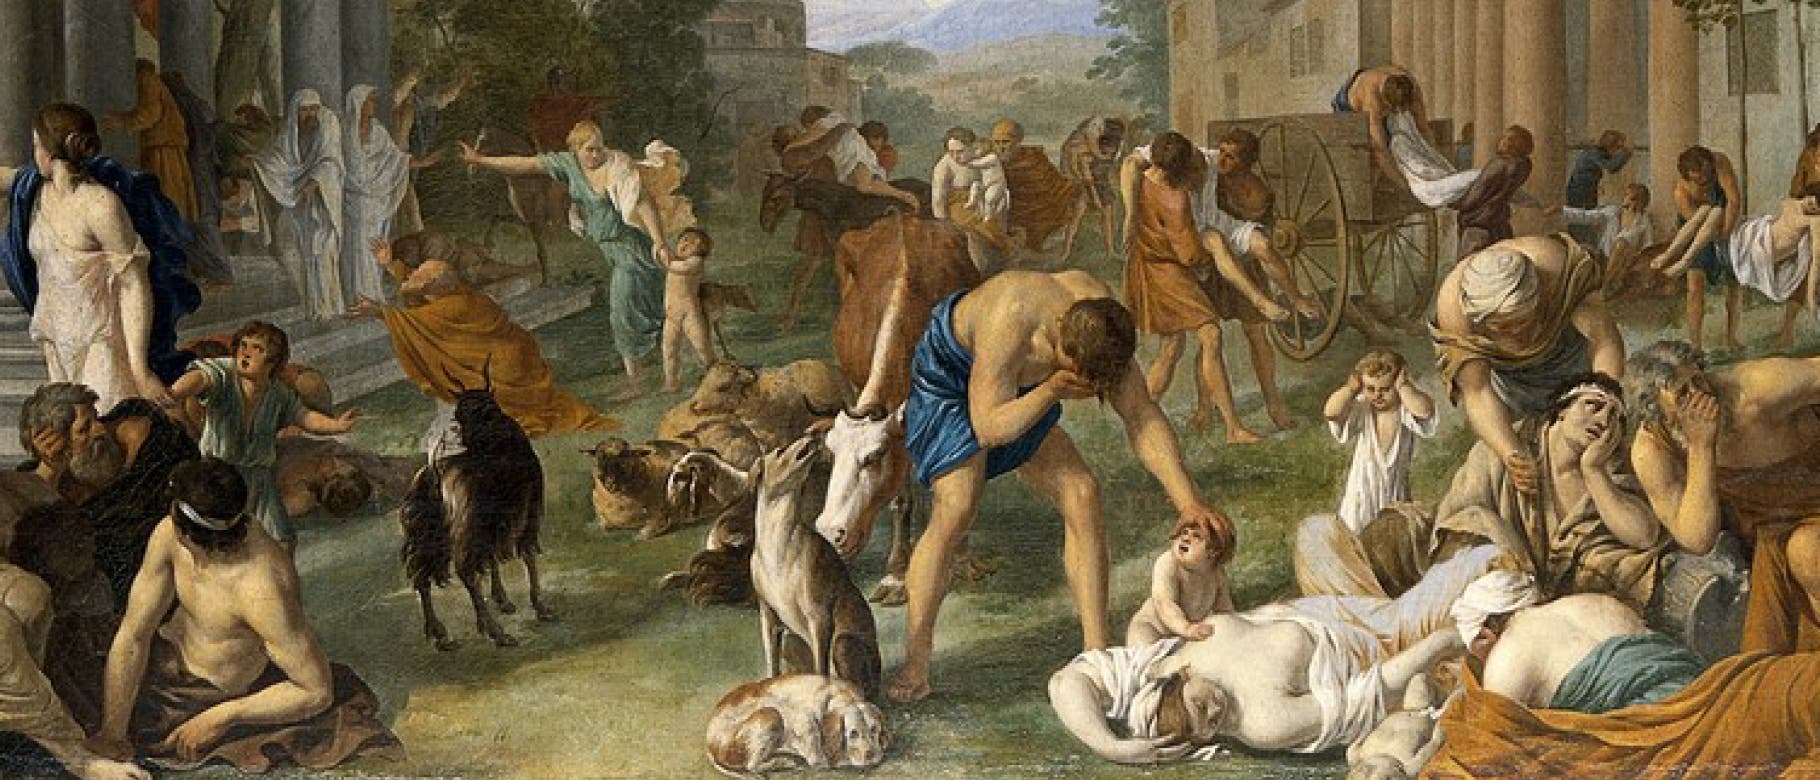 Als Sinnbild für die Pest eine Gemälde von Peter van Halen aus dem Jahr 1661. Der flämische Maler stellte eine Episode aus dem alten Testament dar - Gott bestraft die Philister und »schlug sie mit bösen Beulen«.